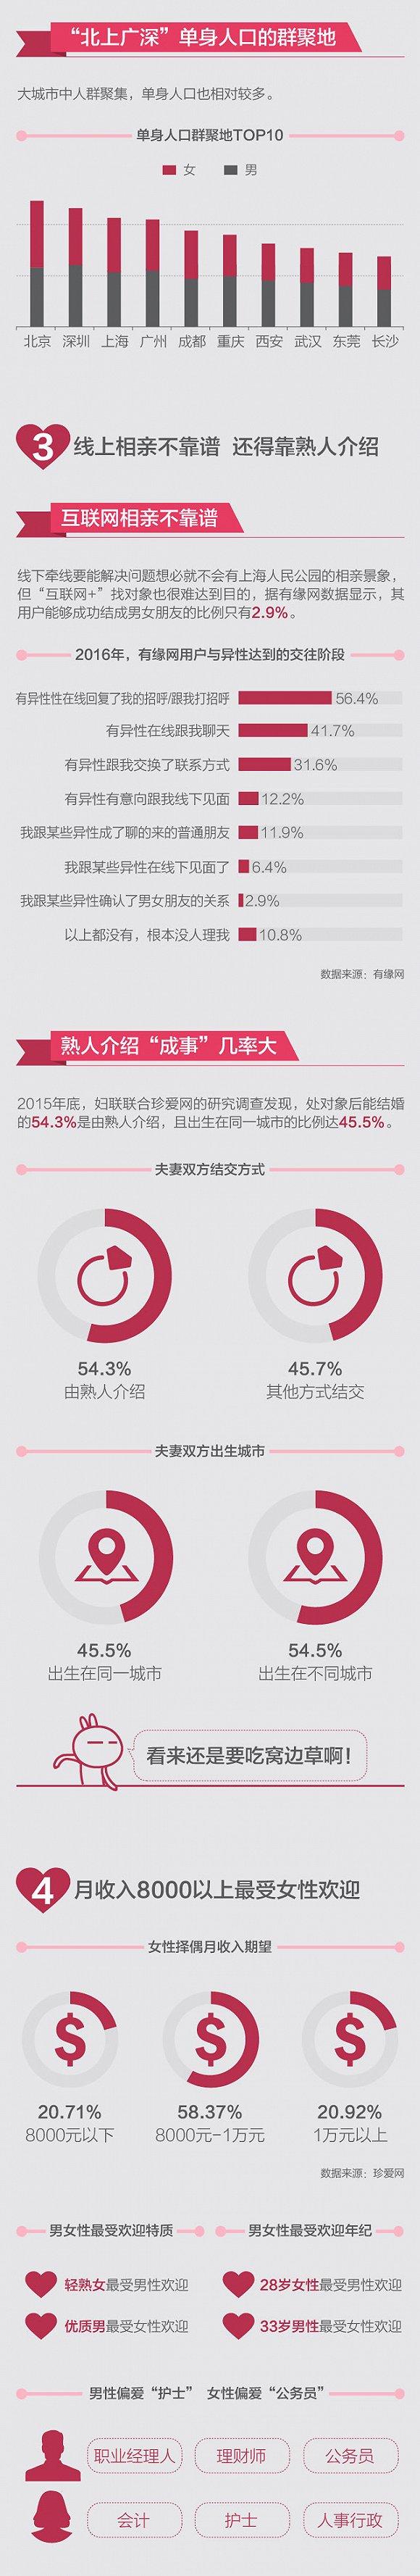 图解丨中国单身成年人口数量超2亿，春节你被安排相亲了吗？